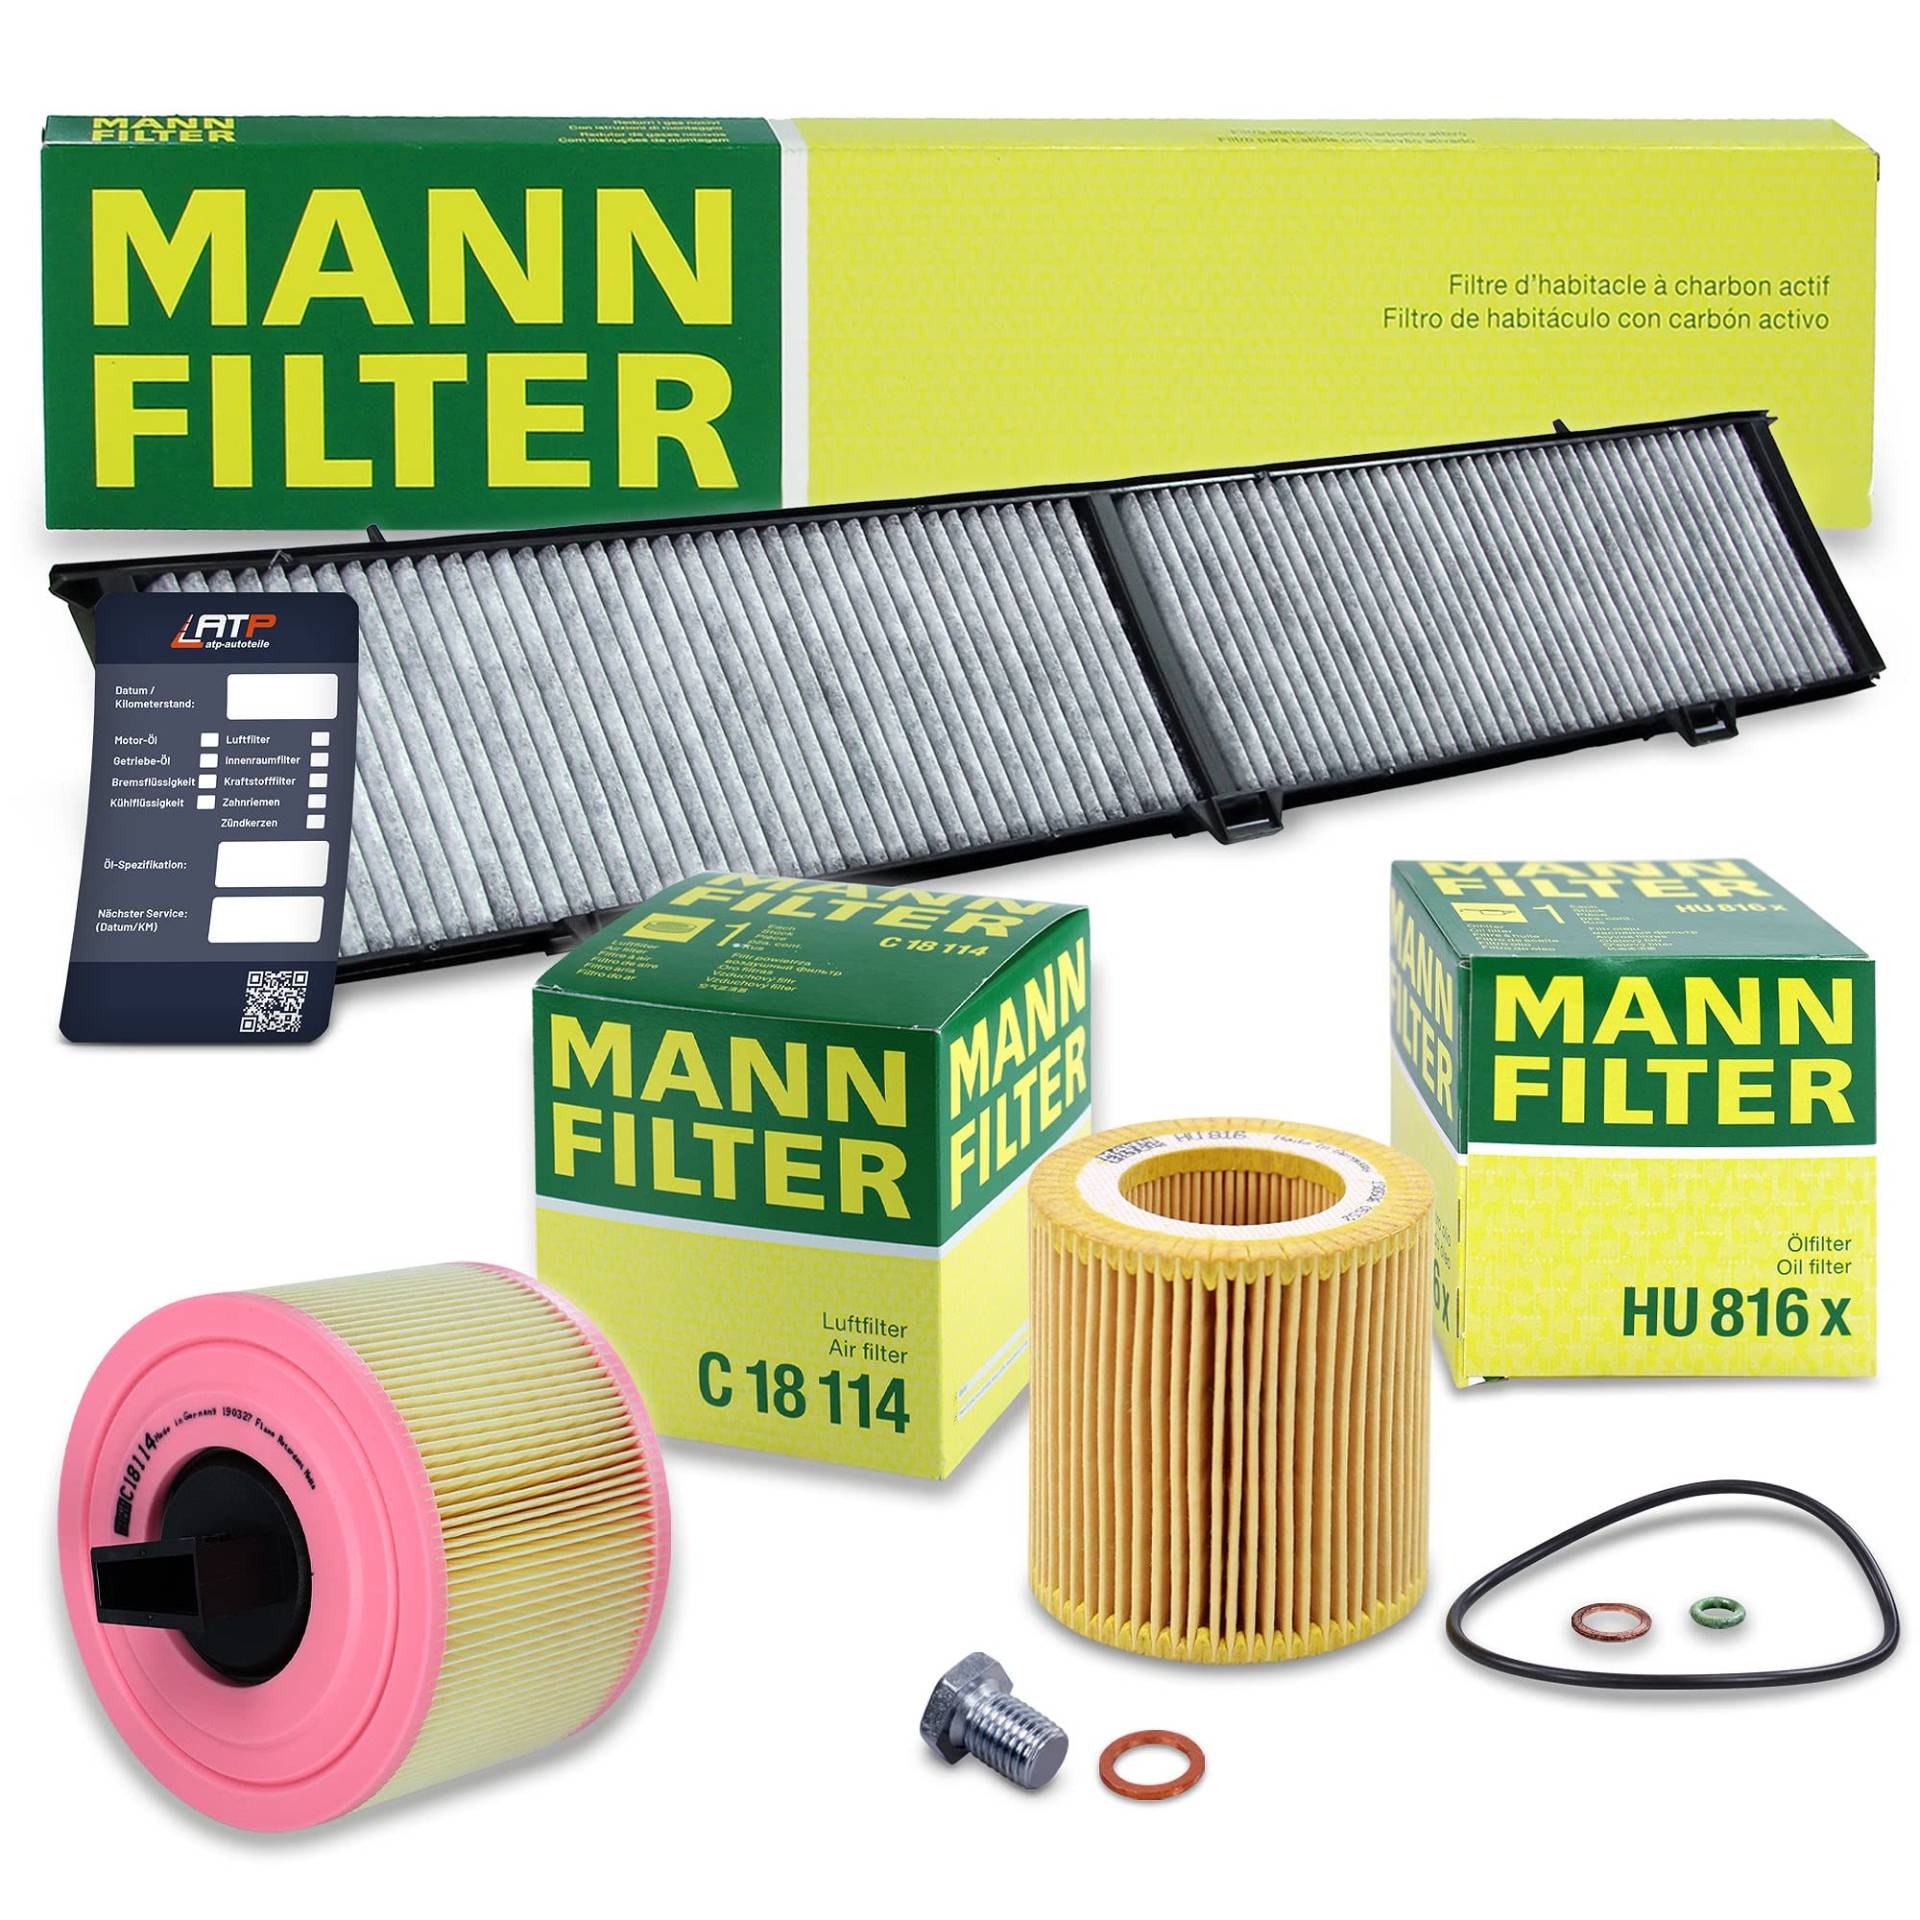 1x MANN-FILTER Ölfilter, 1x MANN-FILTER Luftfilter, 1x MANN-FILTER Innenraumfilter (Aktivkohlefilter), 1x Ölablassschraube Kompatibel mit BMW 1er (E81)(E87)(E82), 3er (E90)(E93)(E92)(E91), X1 (E84) von MANN-FILTER